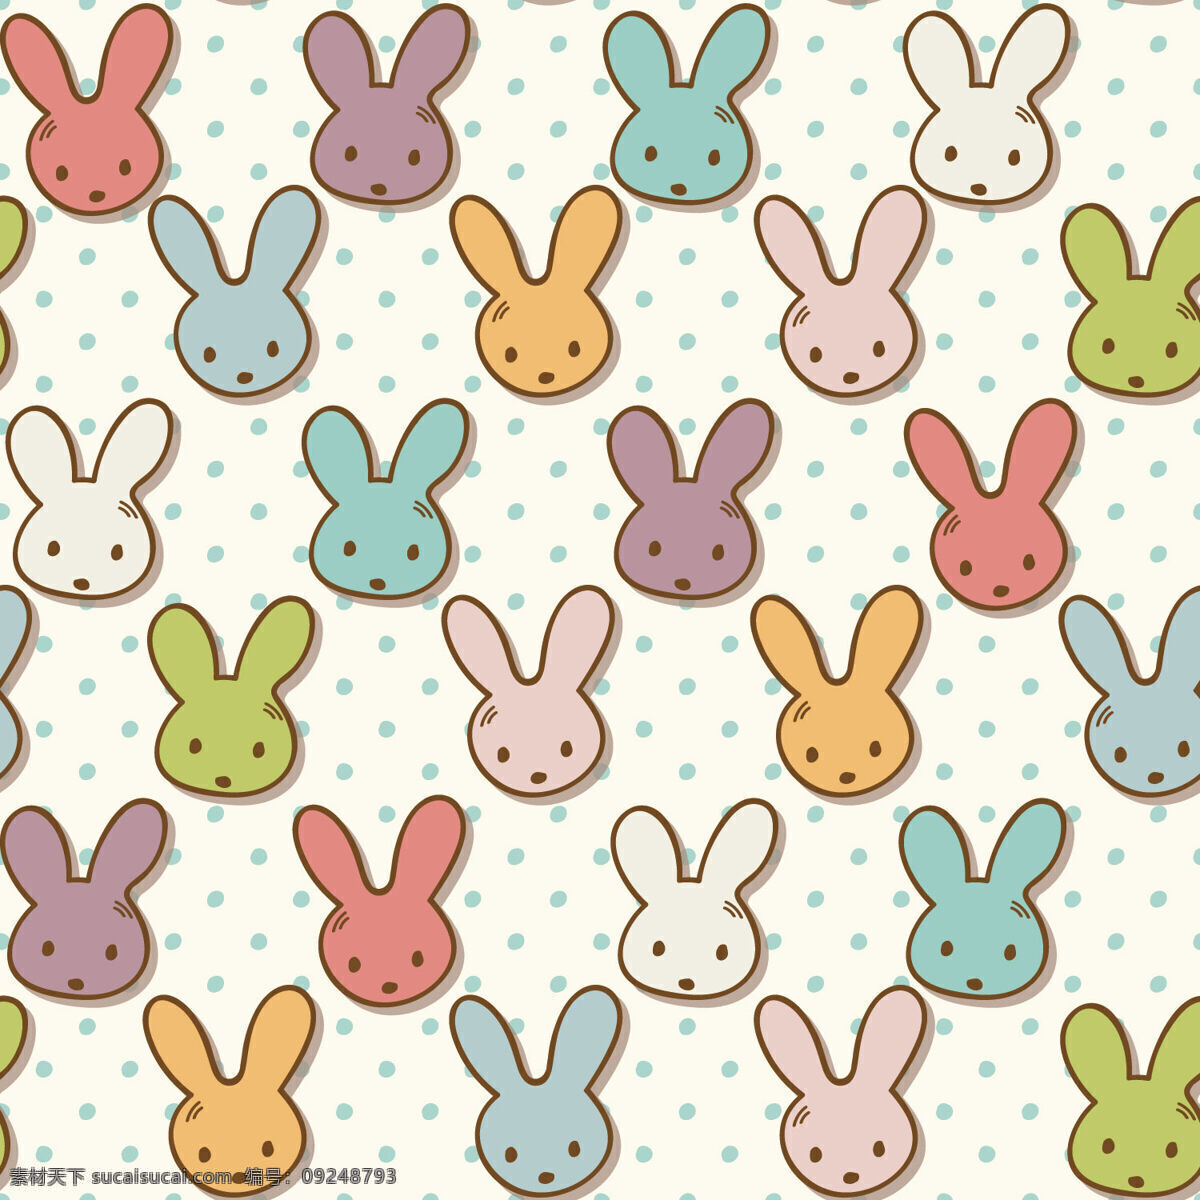 彩色 兔子 清新 壁纸 图案 装饰设计 斑点底色 彩色兔子 壁纸图案 手绘动物